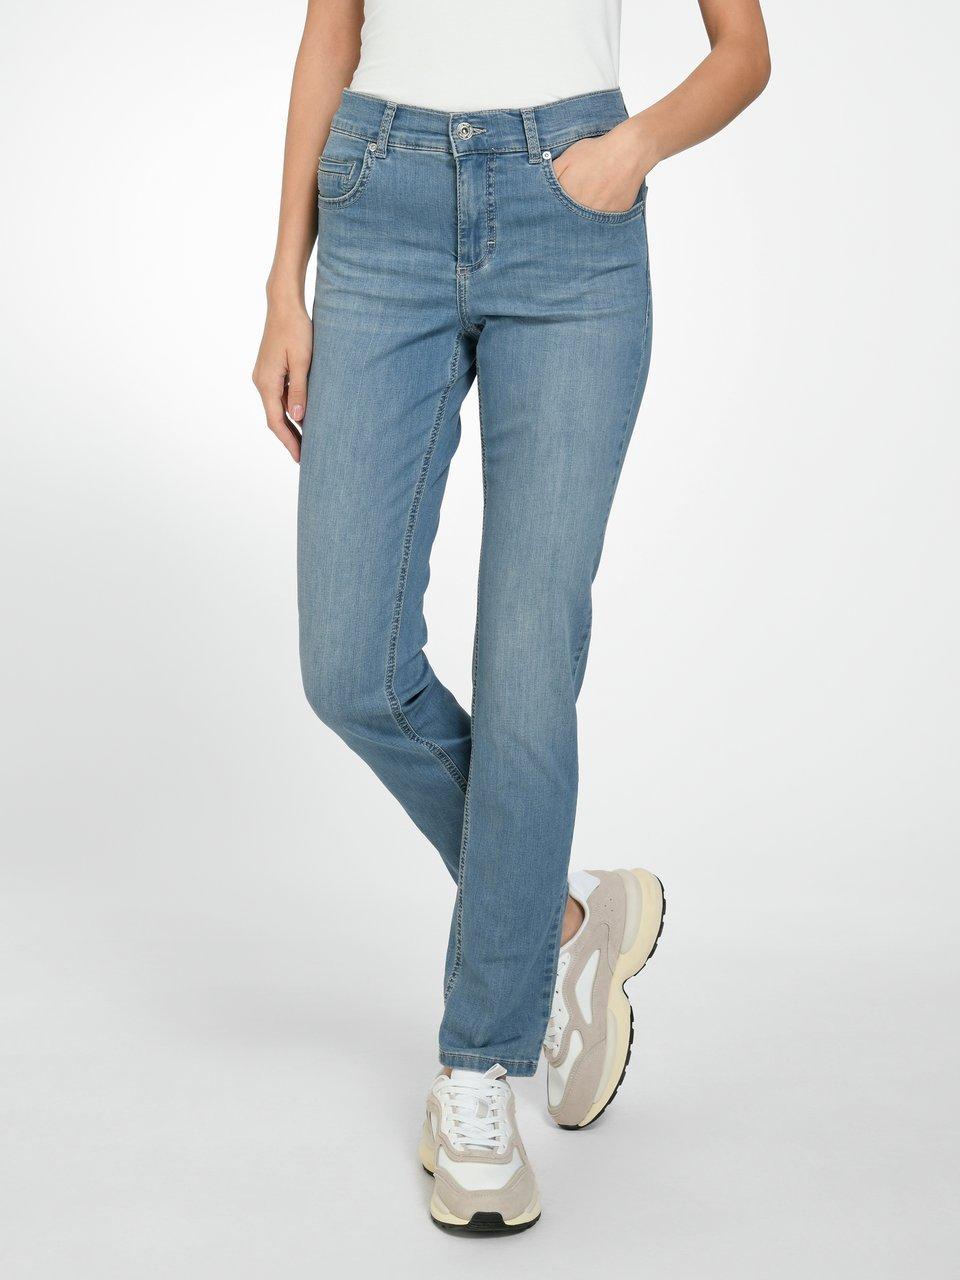 ANGELS - Jeans Regular Fit Modell denim - Blue Cici